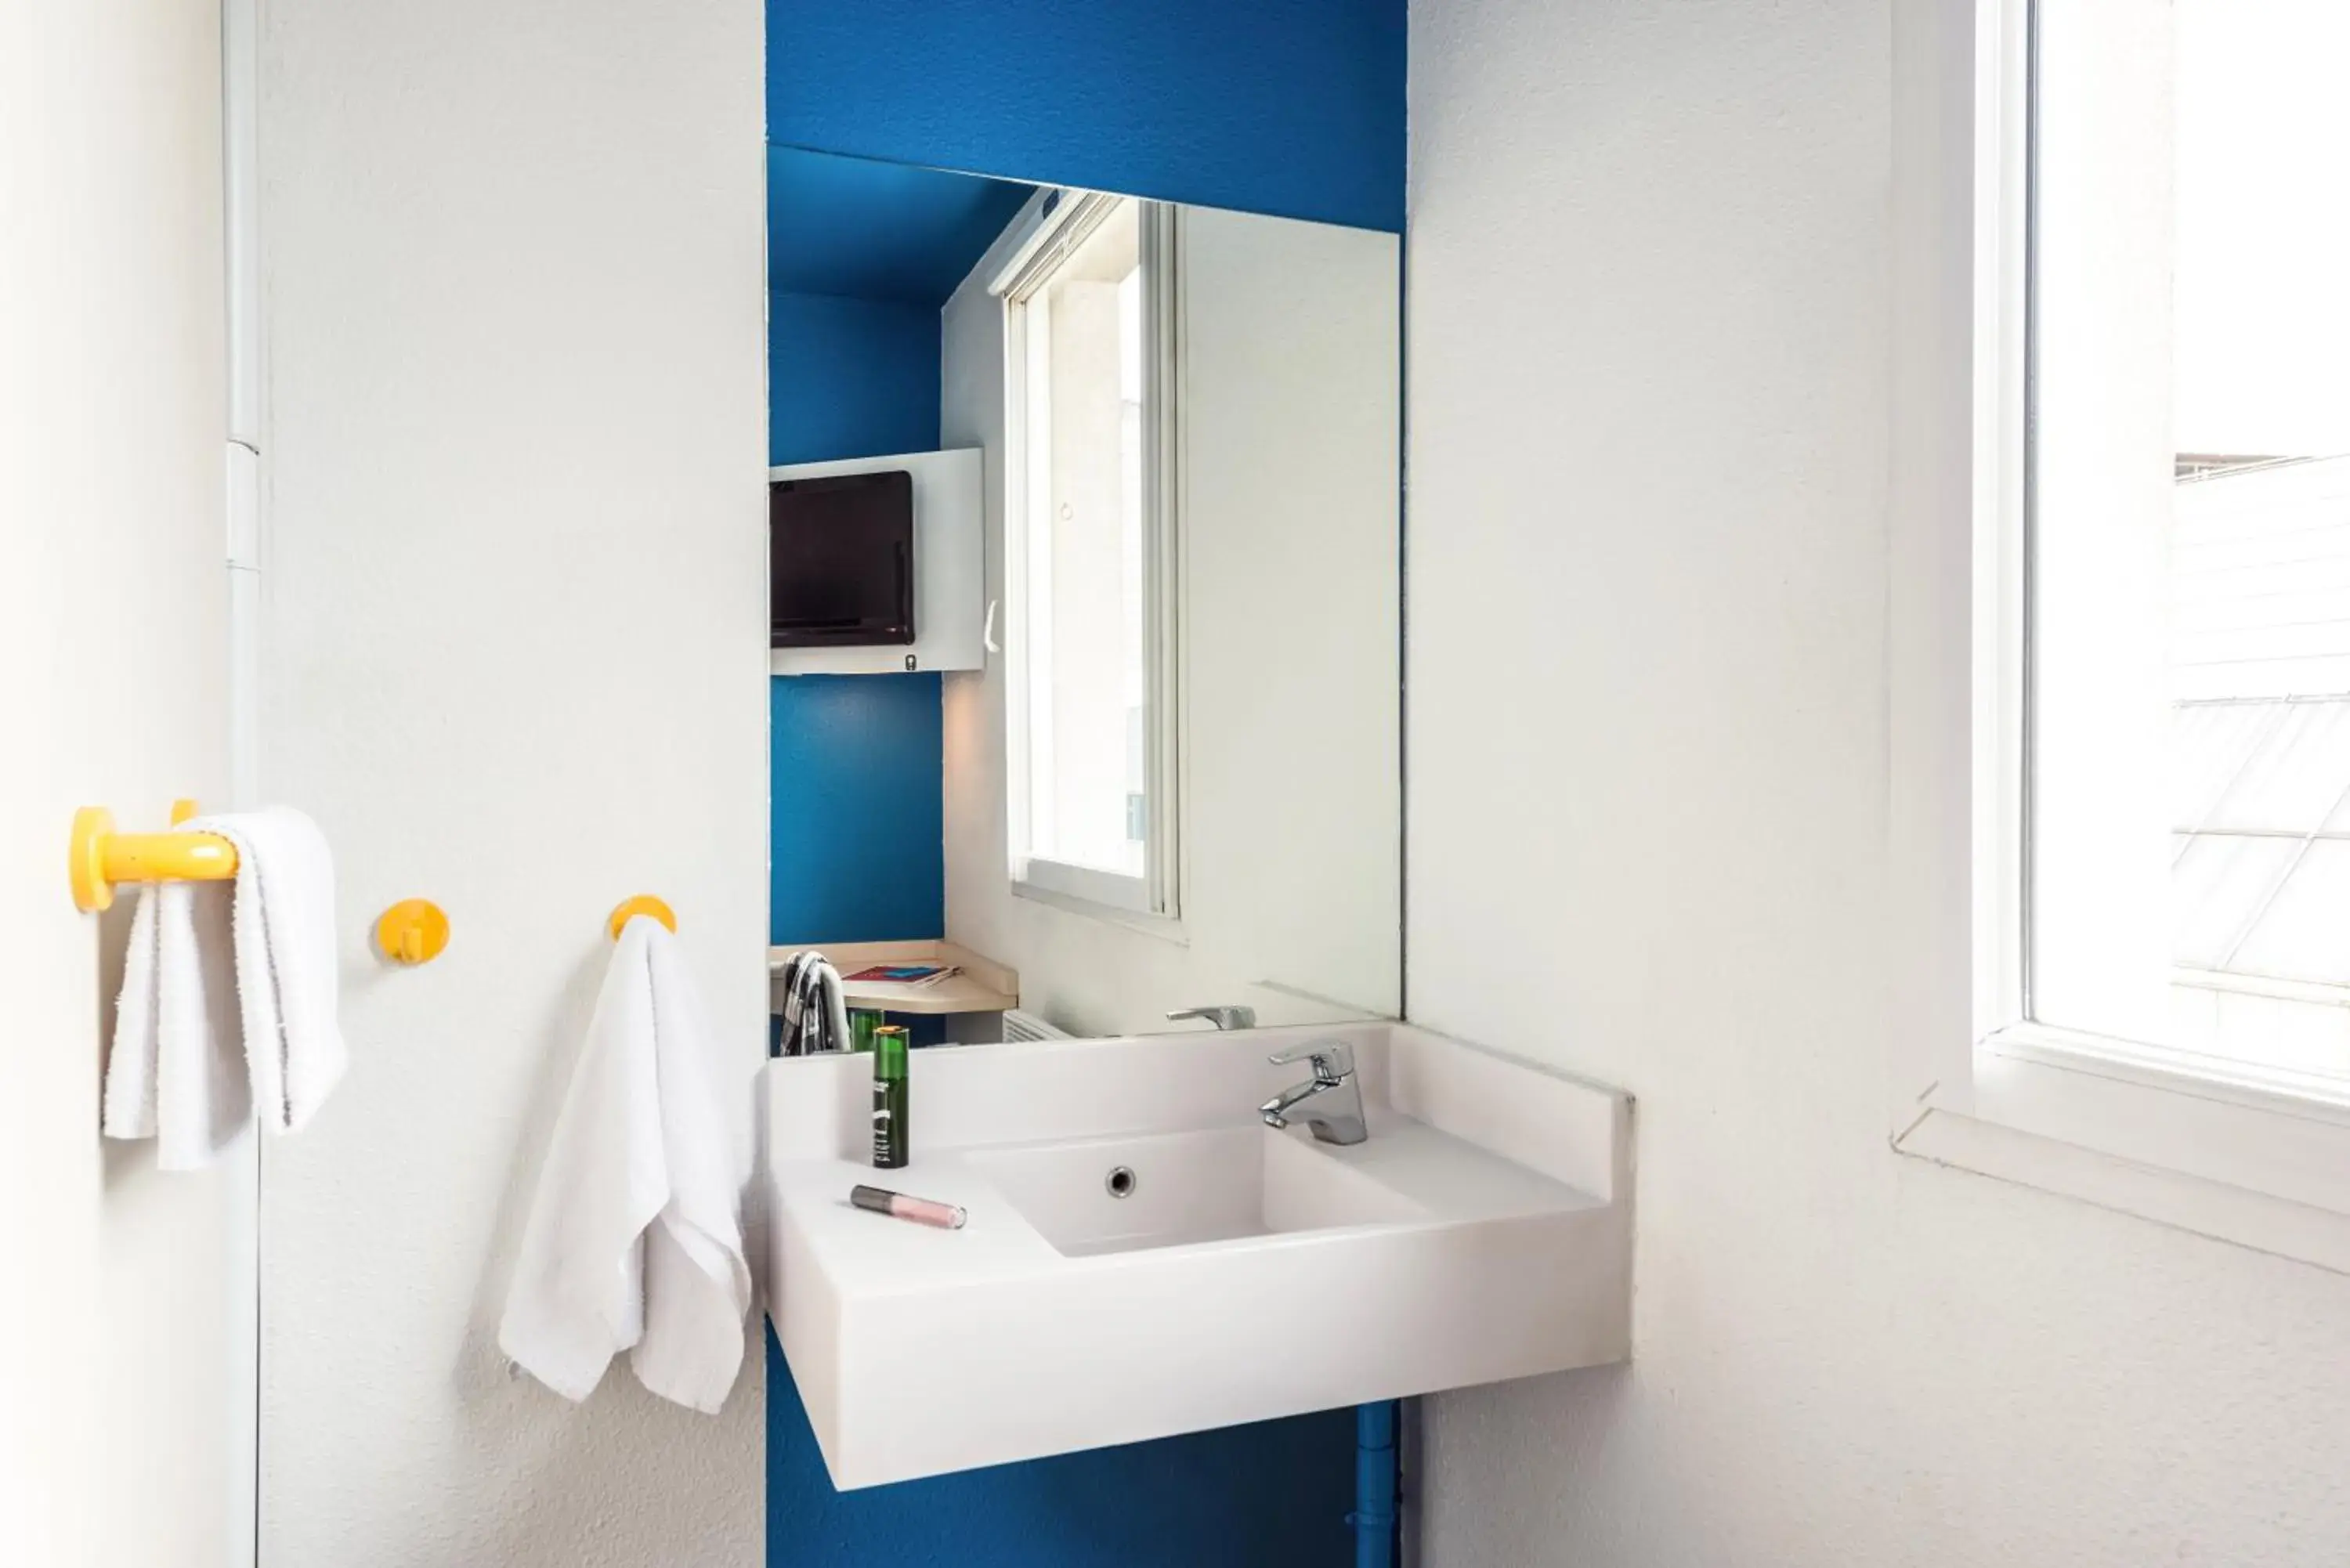 Bedroom, Bathroom in hotelF1 Evreux Sud